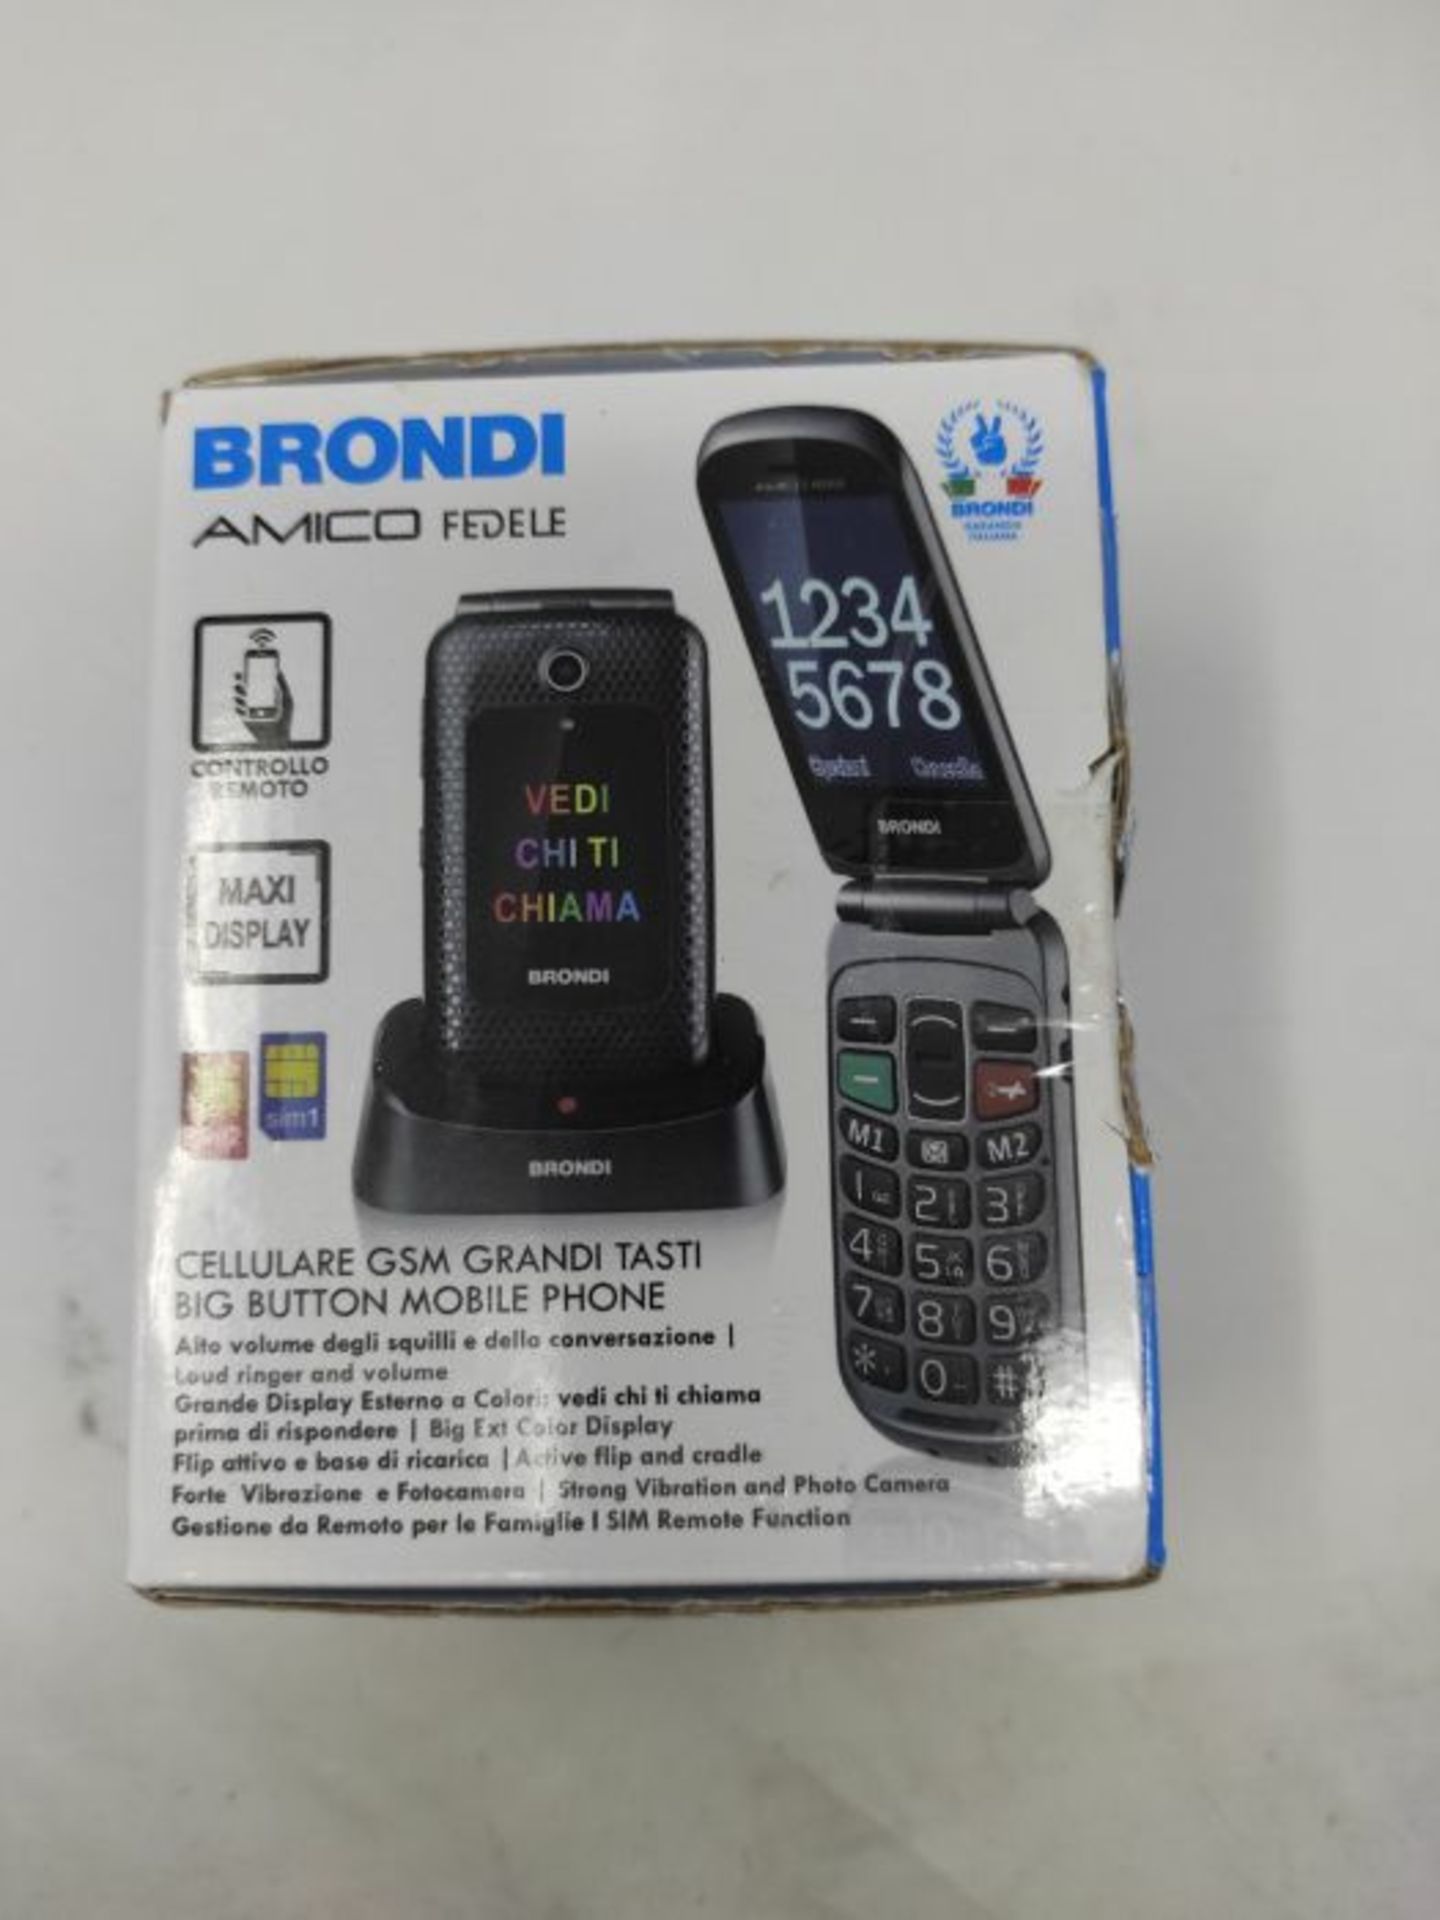 RRP £65.00 Brondi Amico Fedele, Telefono cellulare GSM per anziani con tasti grandi, tasto SOS e - Image 5 of 6